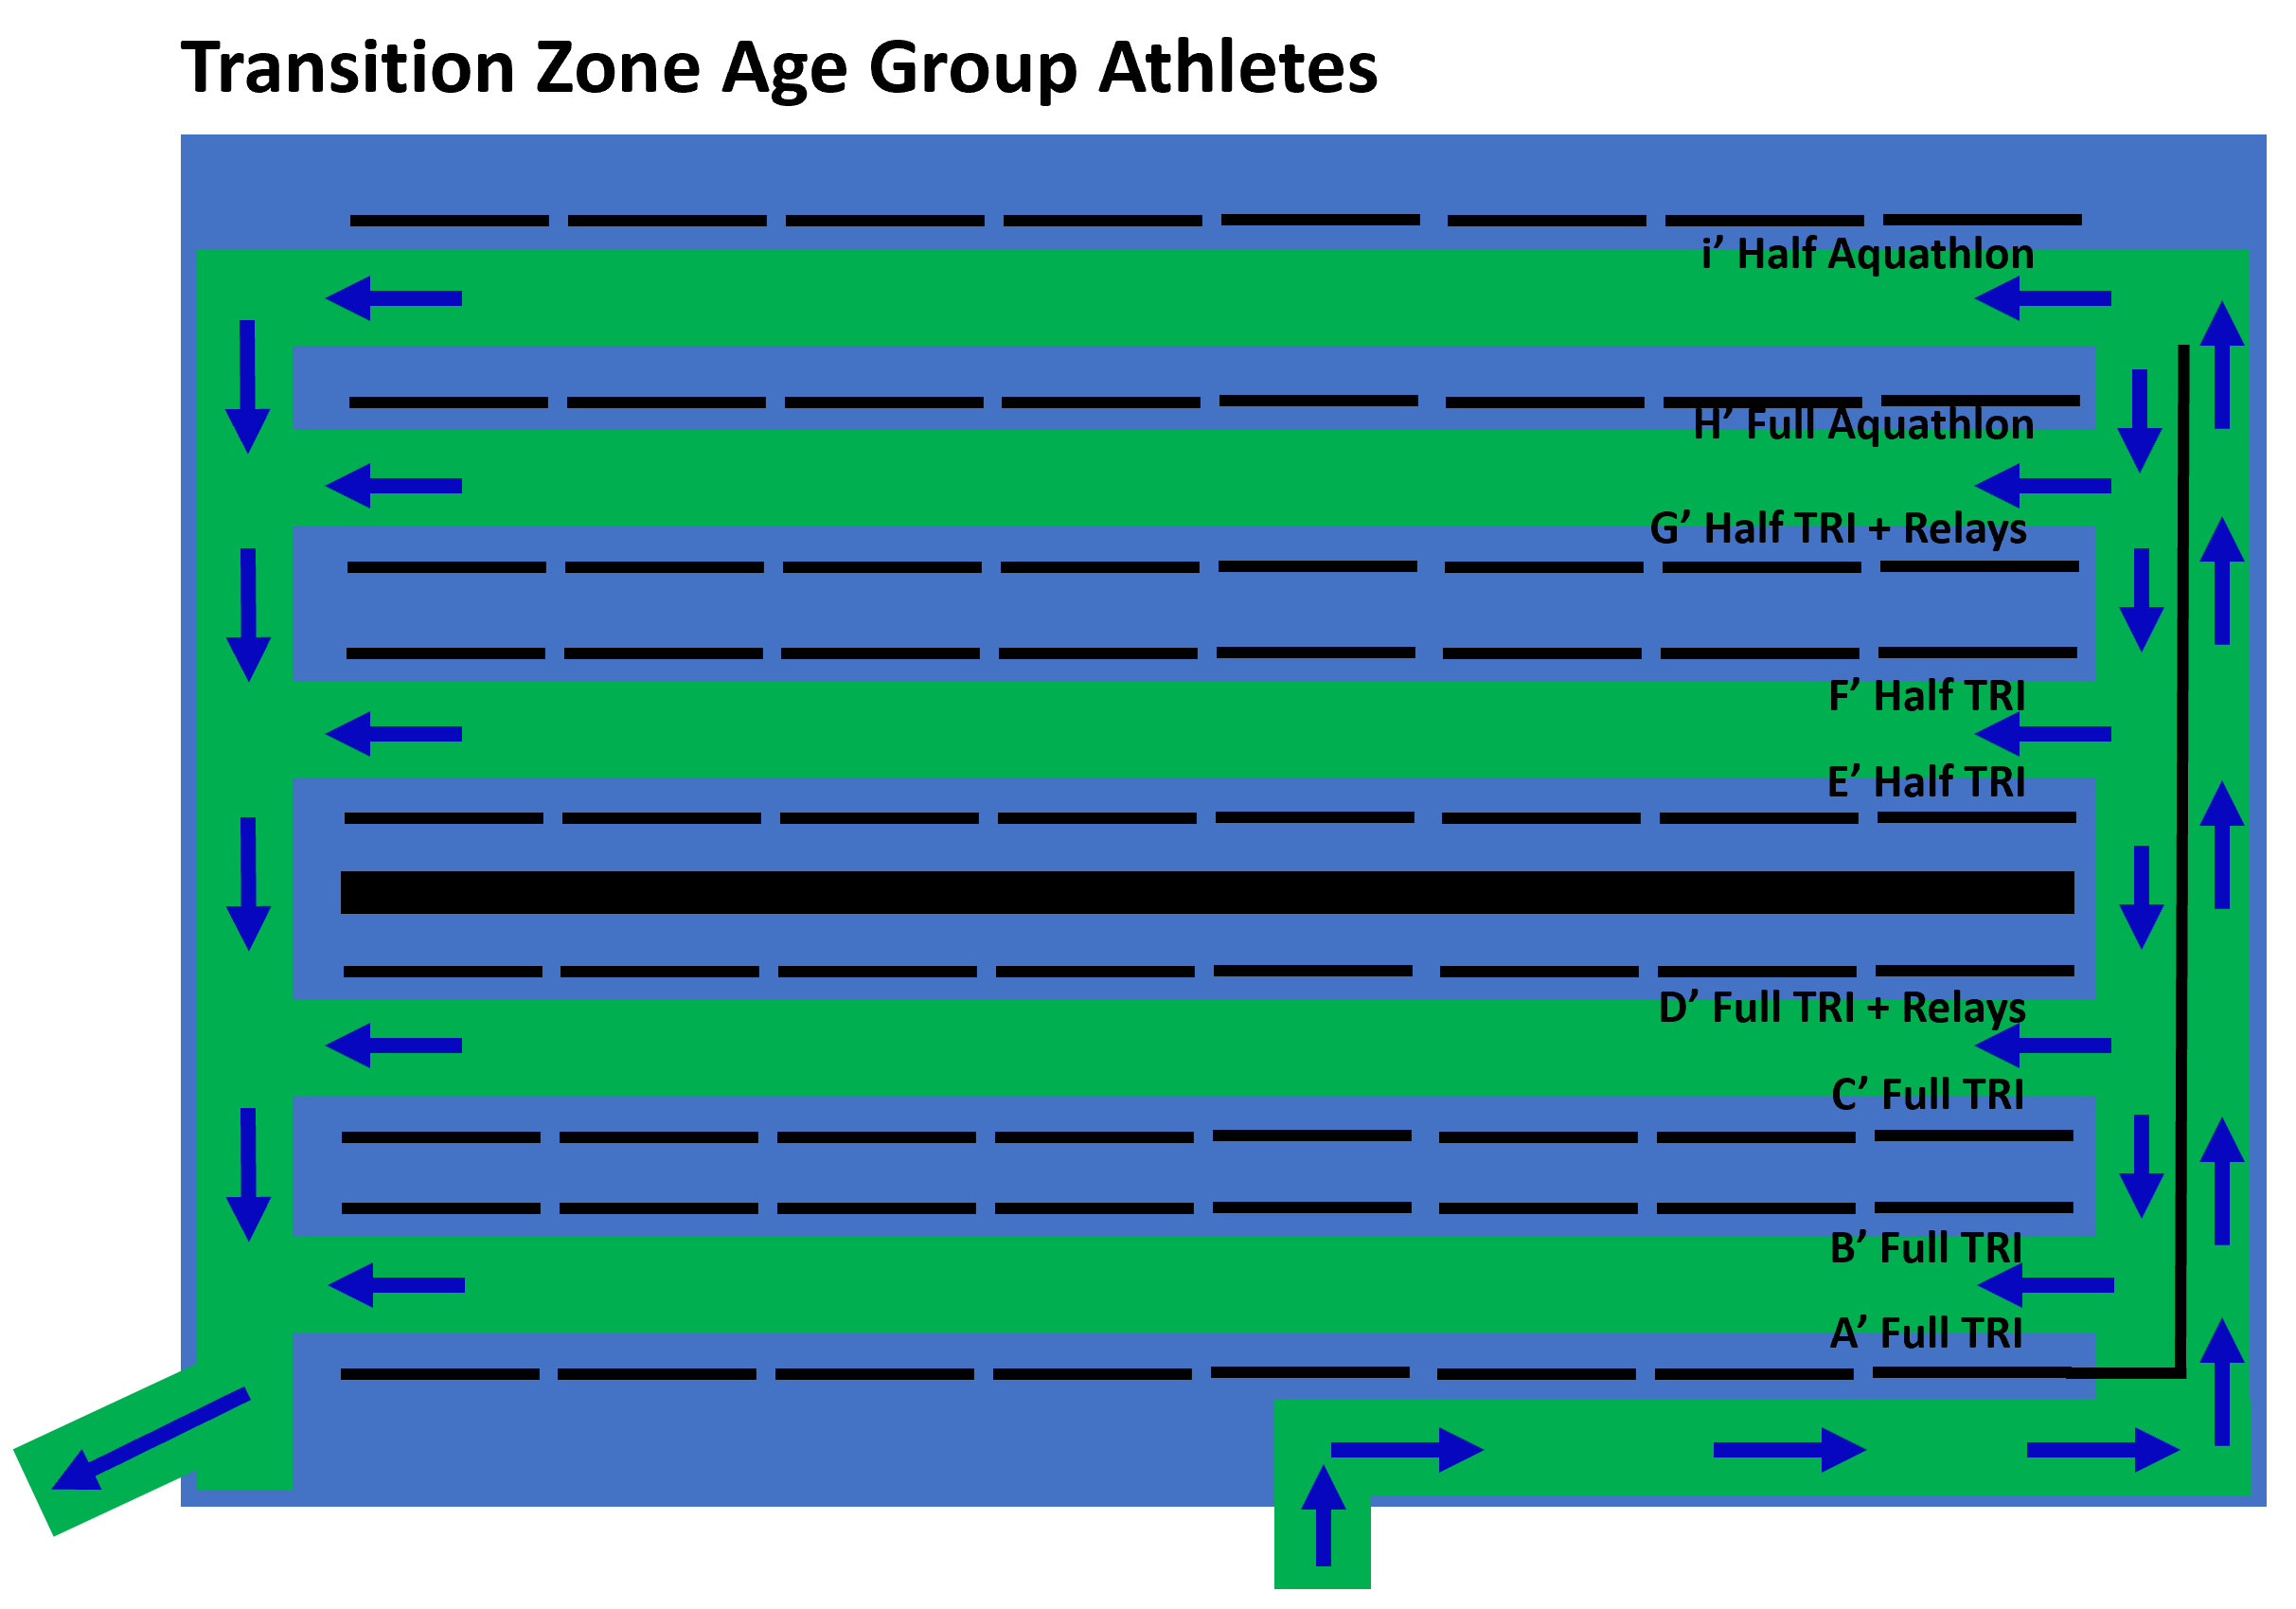 TZ Age Group Athletes